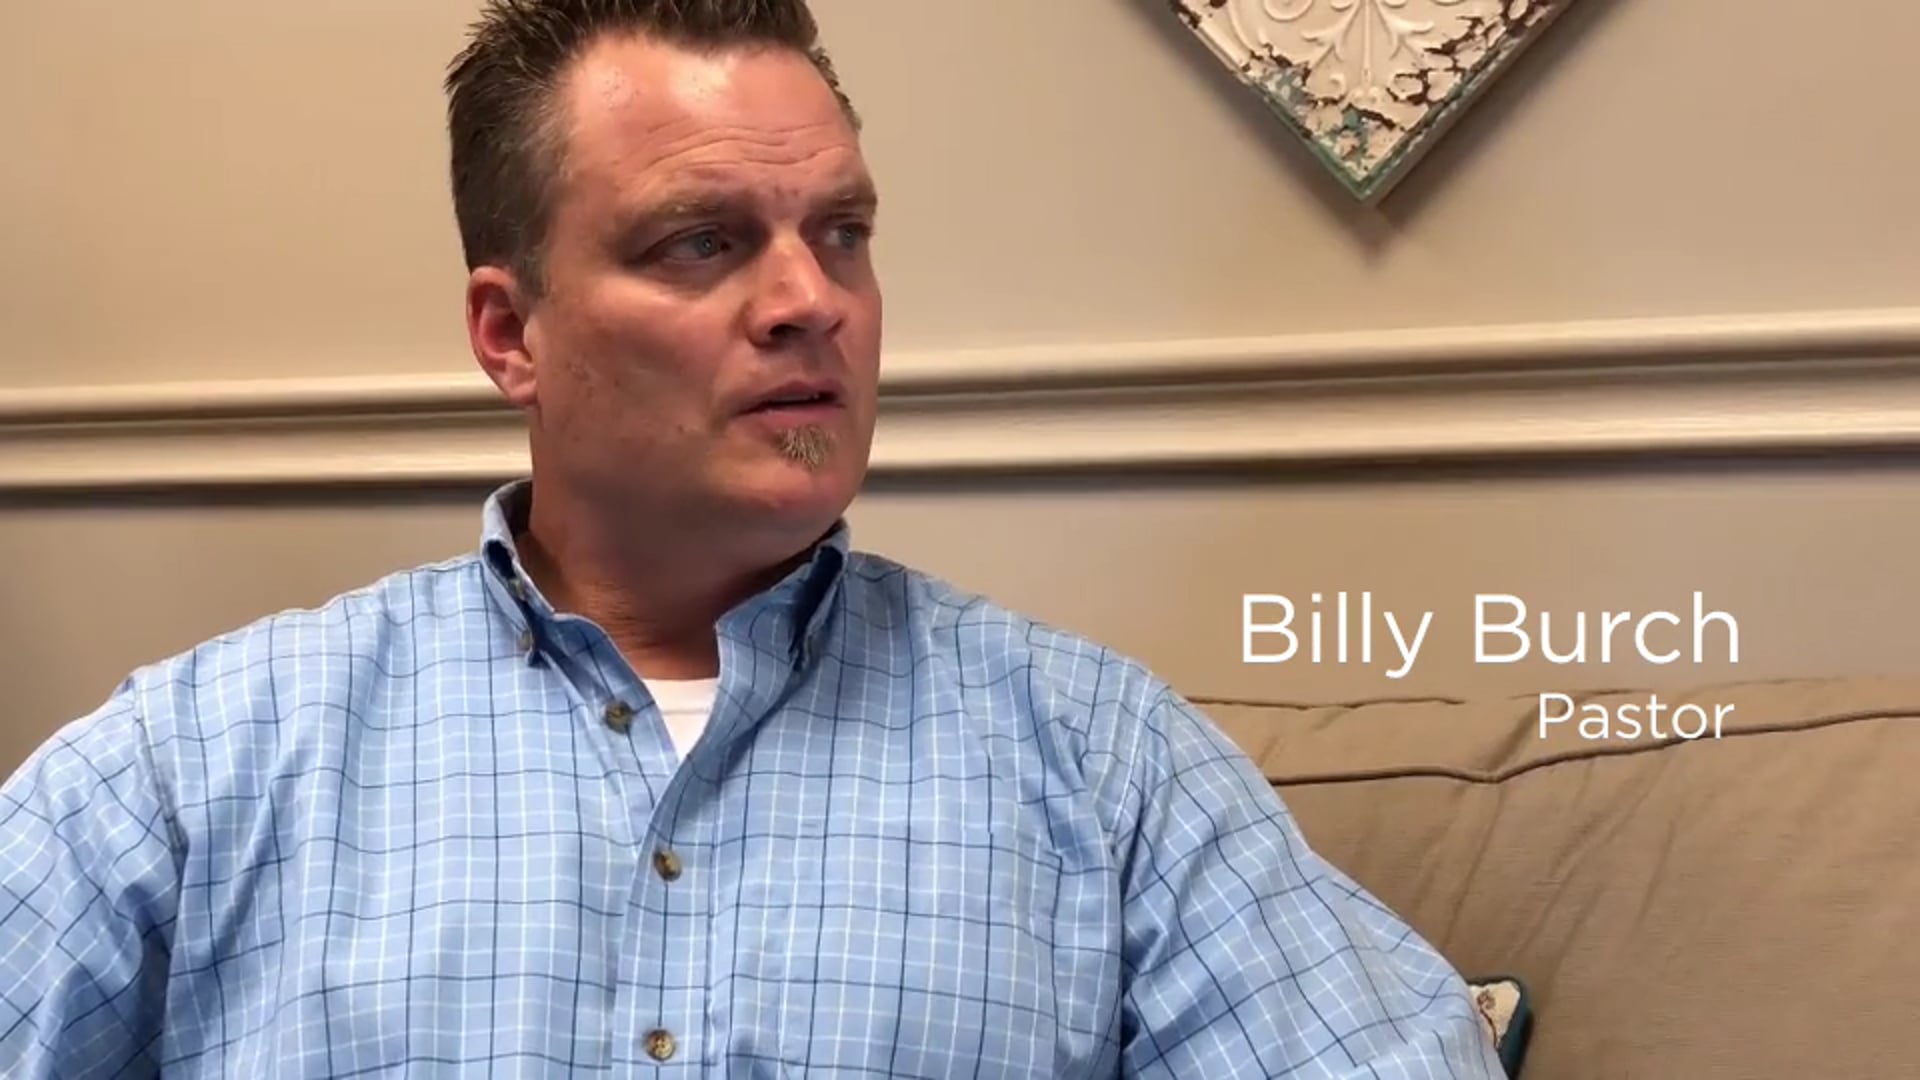 Billy's story